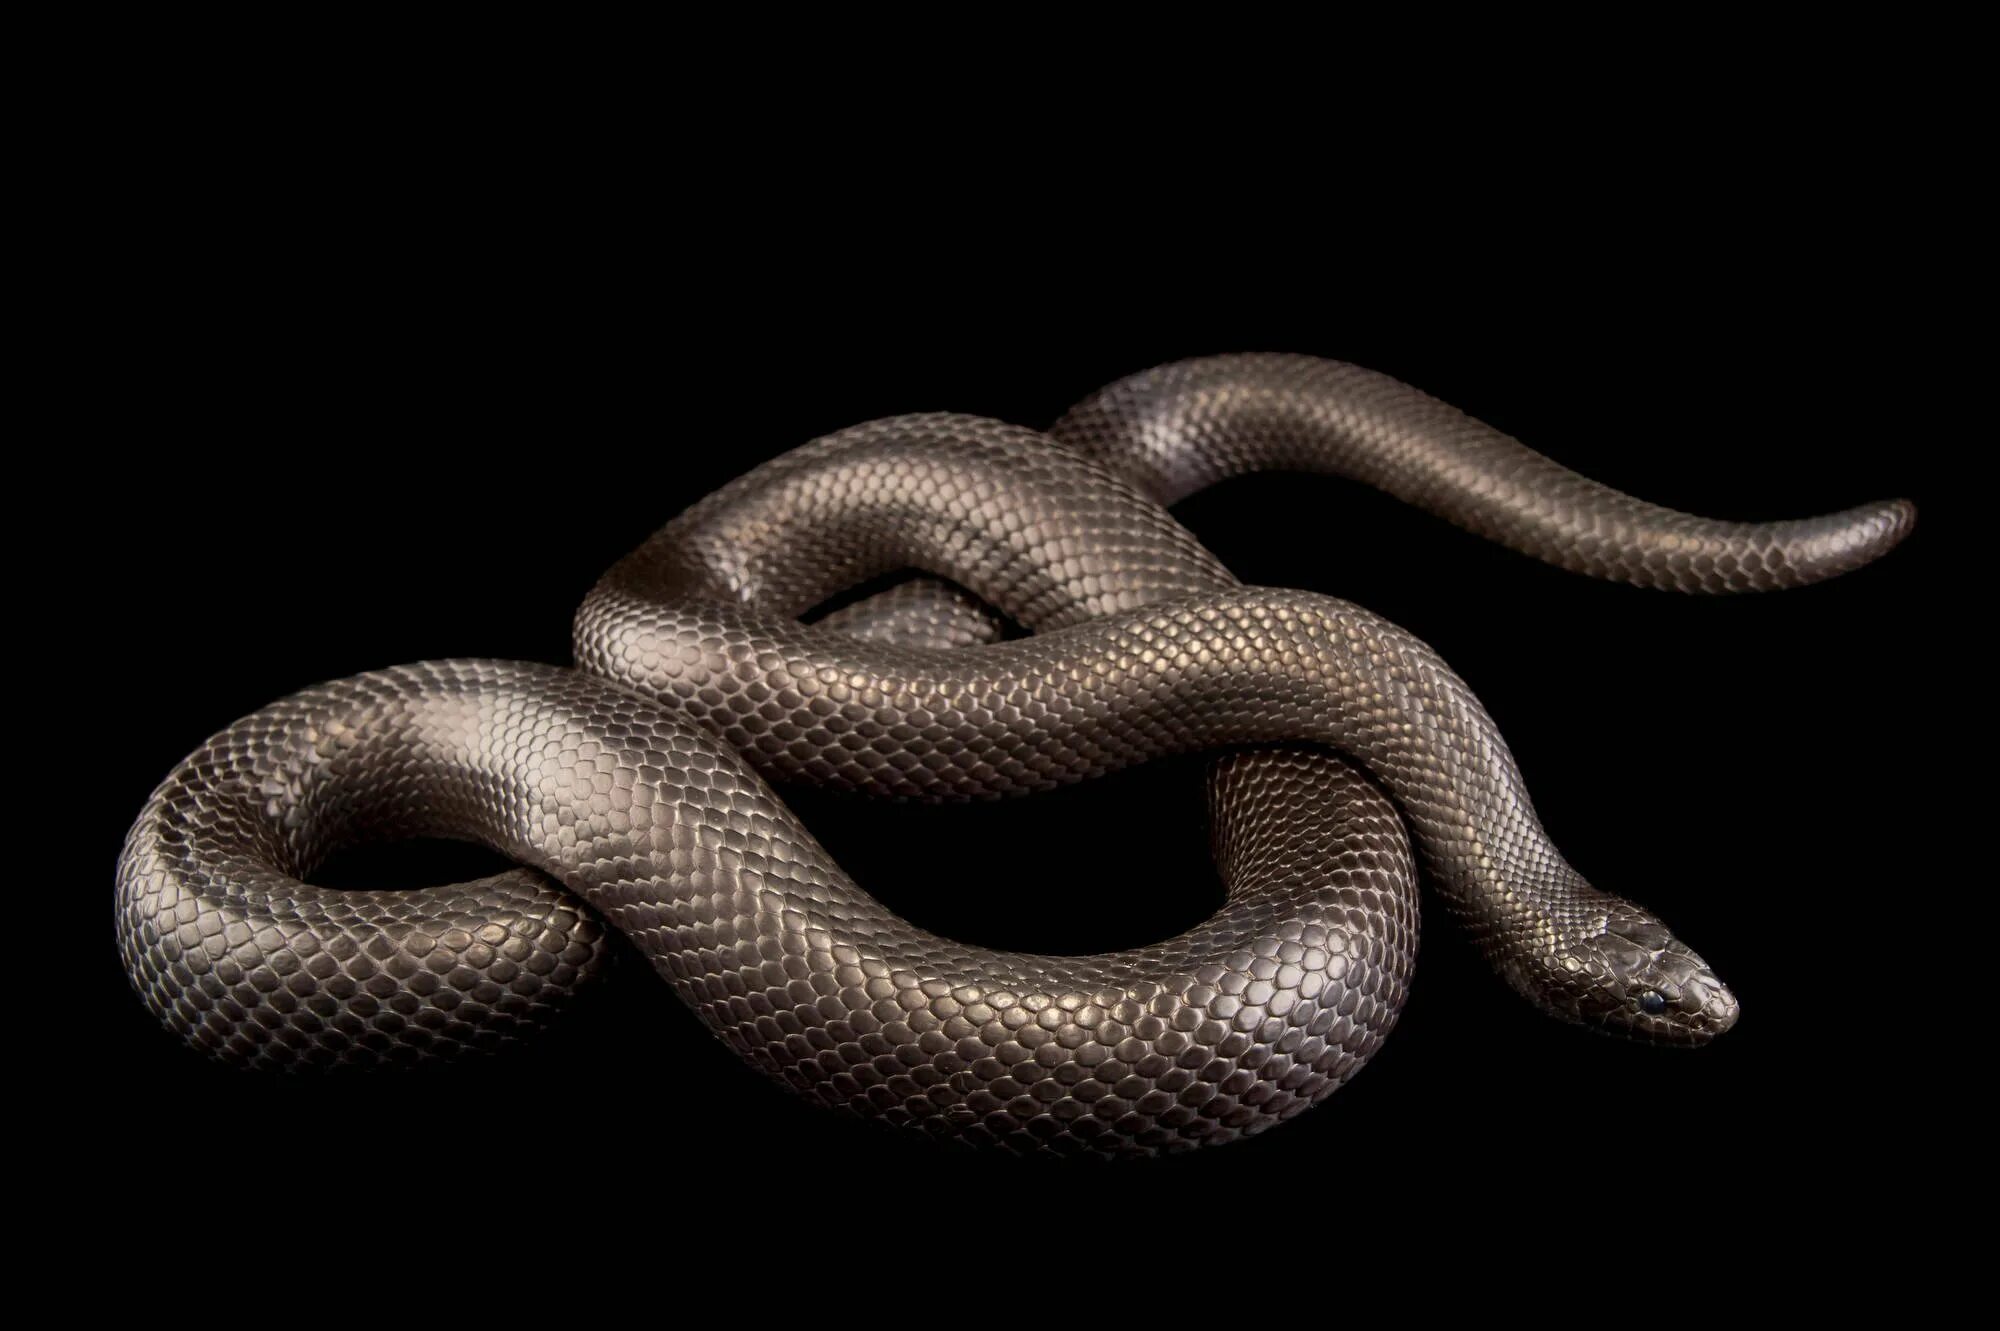 Черная змея год. Lampropeltis getula Nigrita. Королевская змея нигрита. Адапазарская гадюка. Чёрная Королевская змея нигрита.